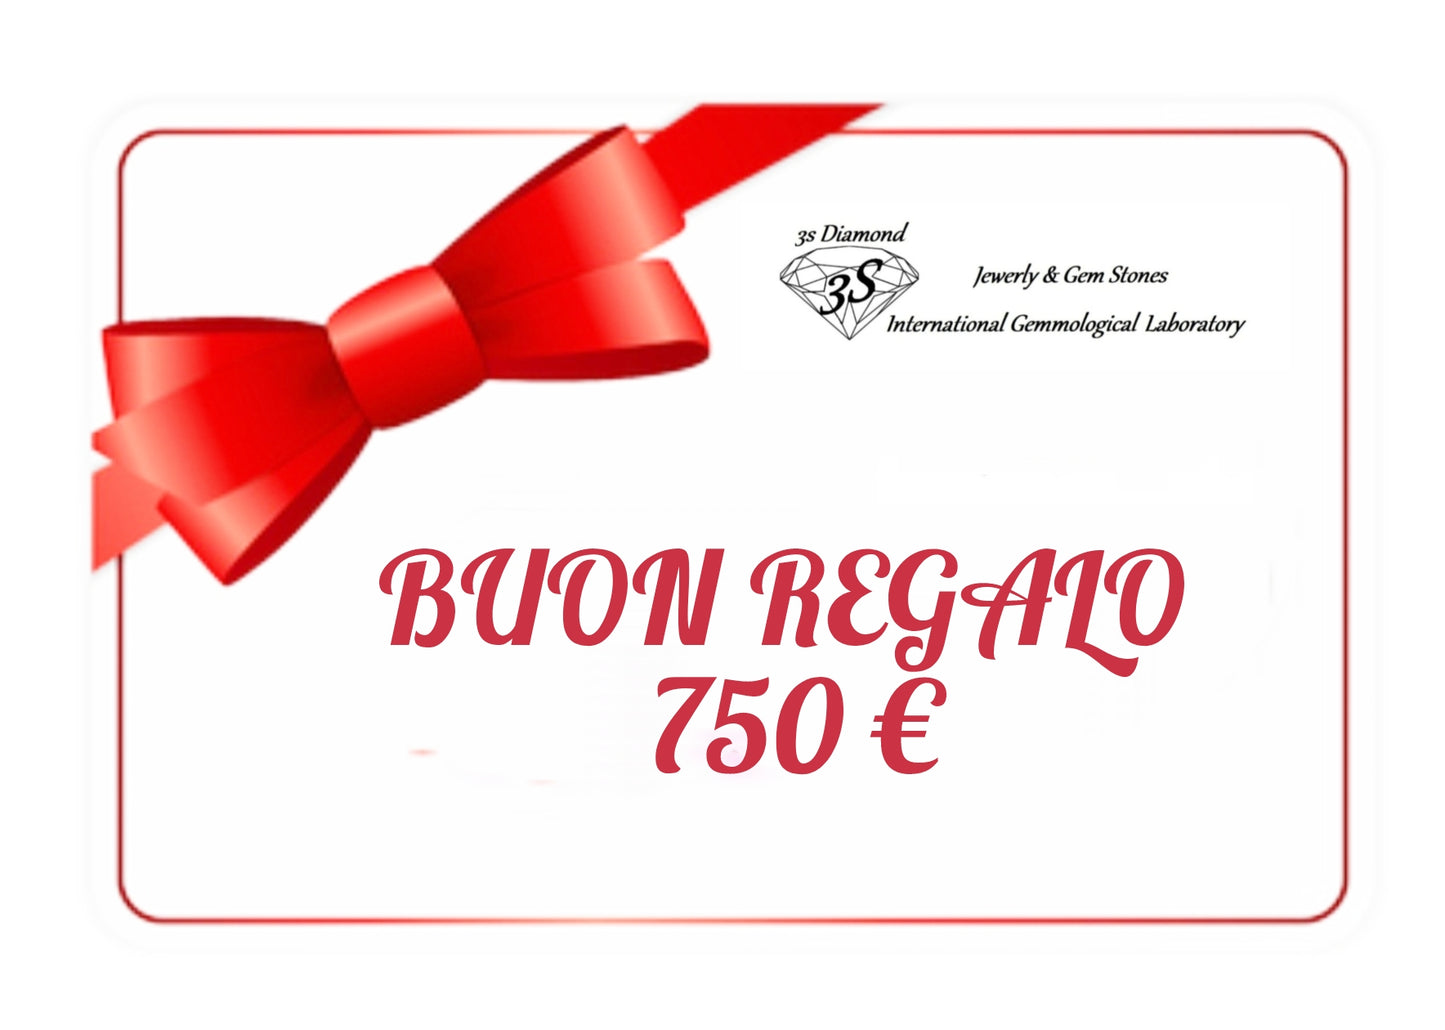 Tessera carta regalo da 150 euro a 500 euro per regalare da utilizzare in 12 mesi